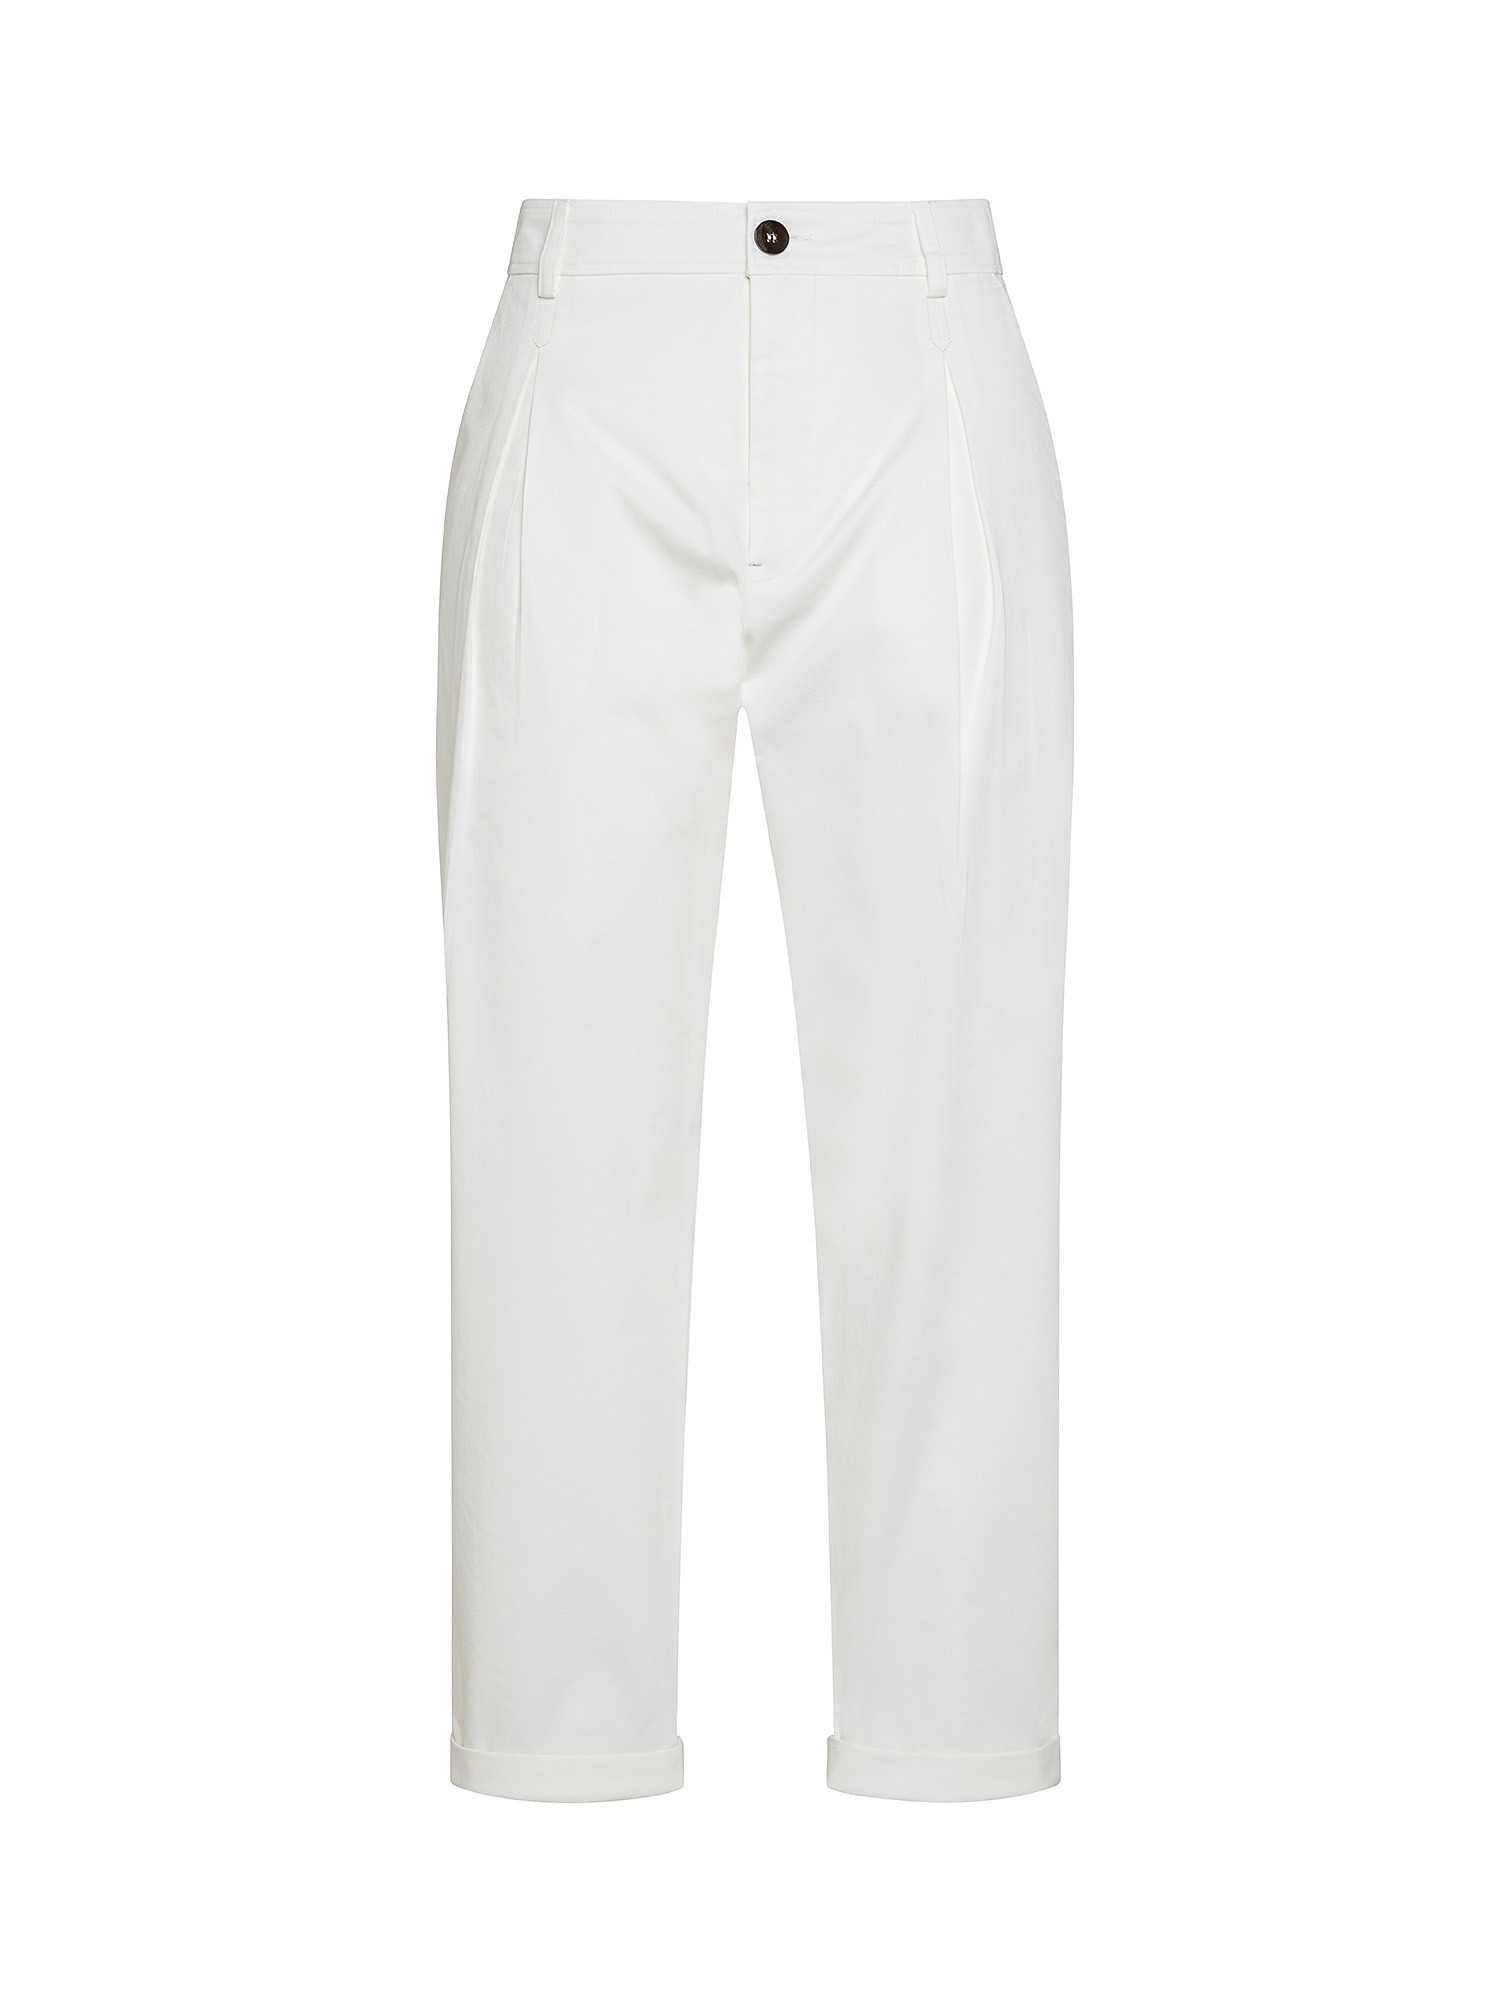 Pantaloni Anderson in gabardine di cotone elasticizzato, Bianco, large image number 0